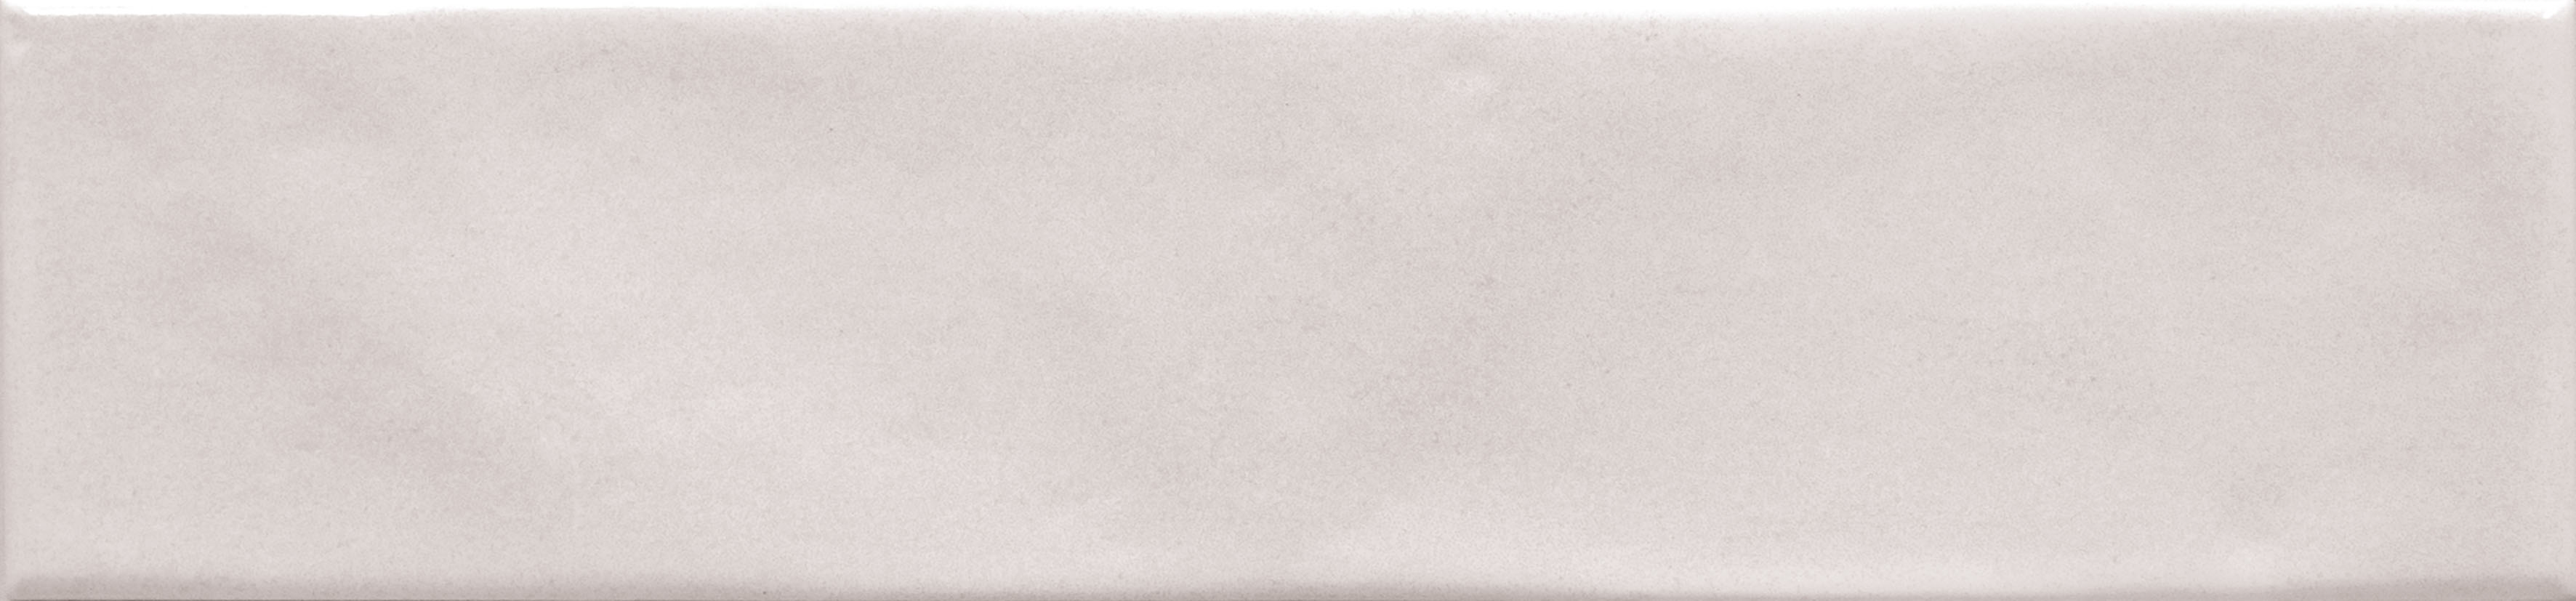 Catalea Gres Nyborg Metrofliese Weiß glänzend 7,5x30 cm  